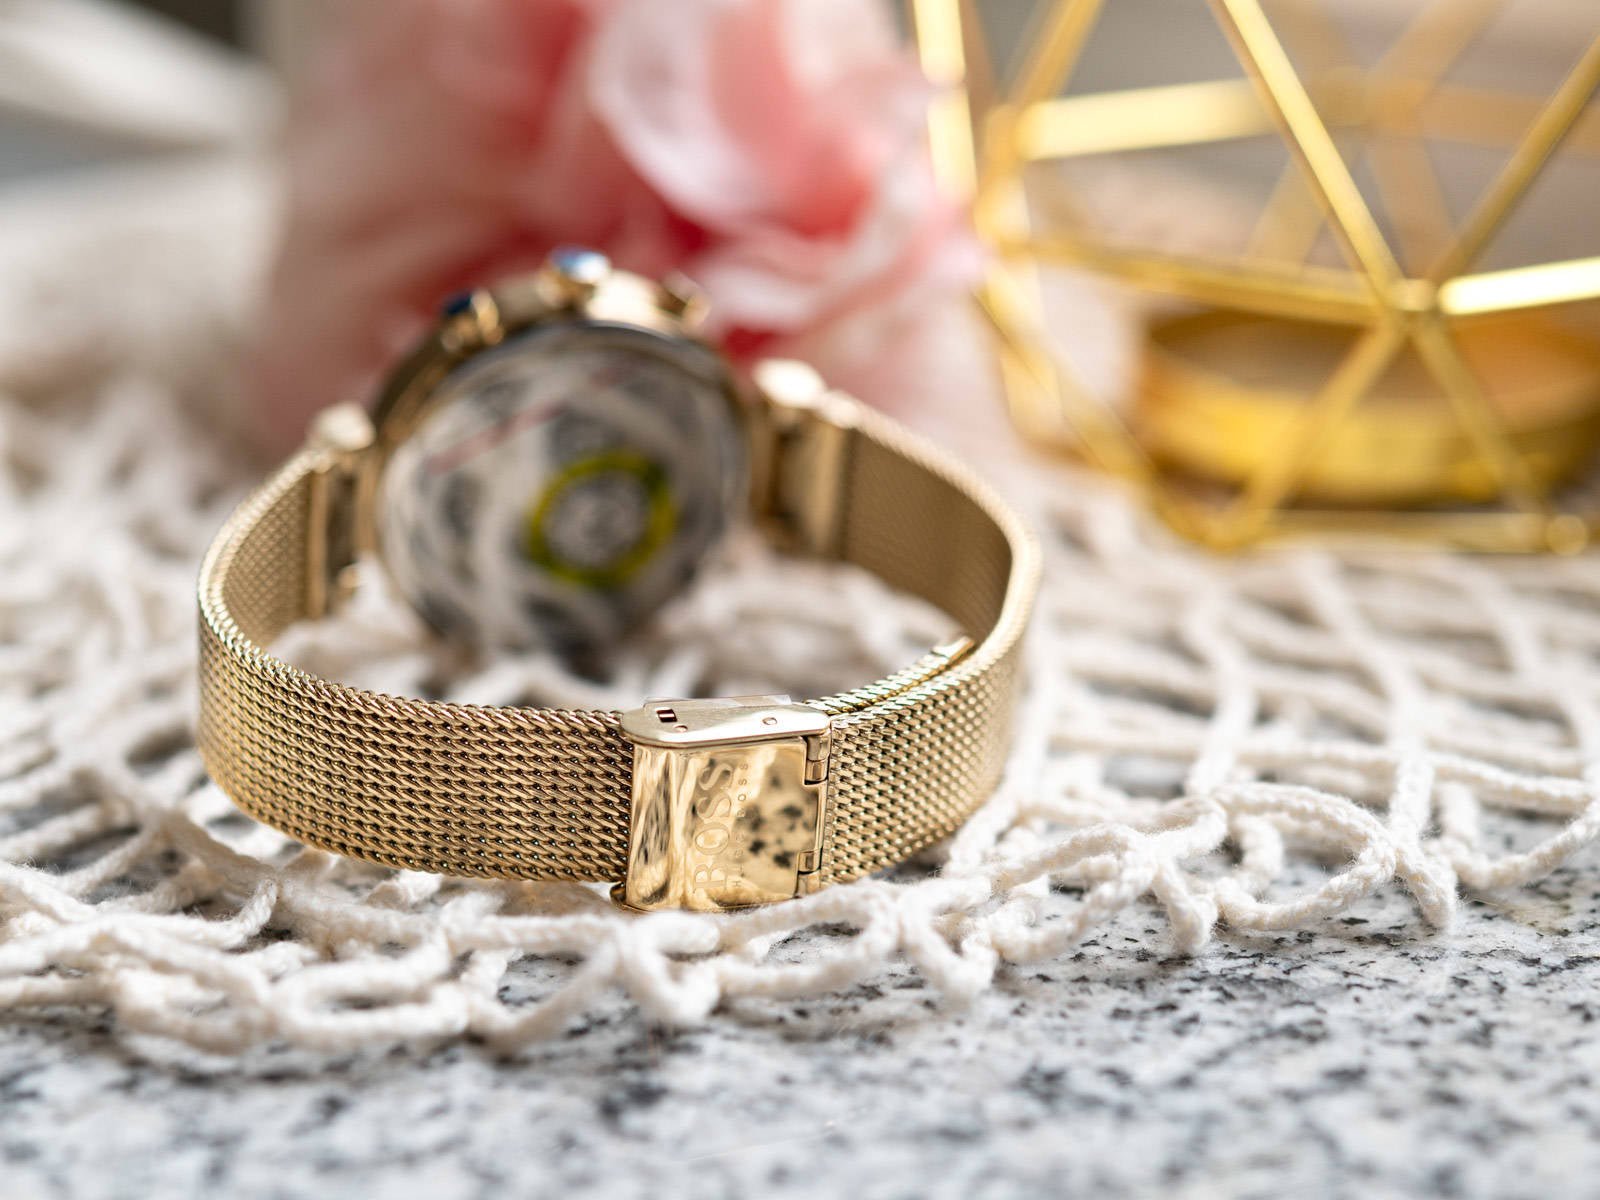 Hugo Boss Flawless White Dial Gold Mesh Bracelet Watch for Women - 1502552